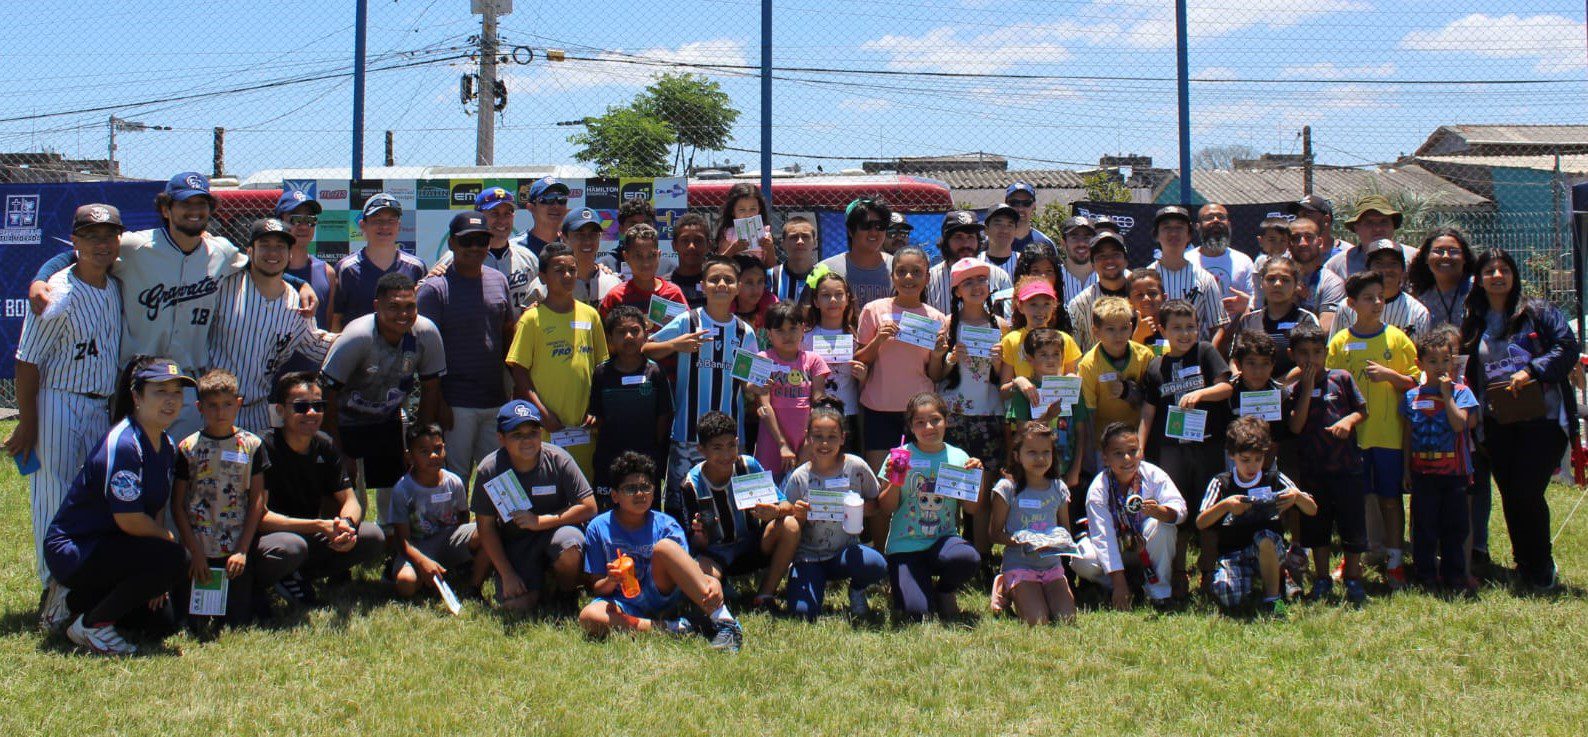 De forma voluntária, equipe de Gravataí ensinará crianças da Restinga a jogar softbol